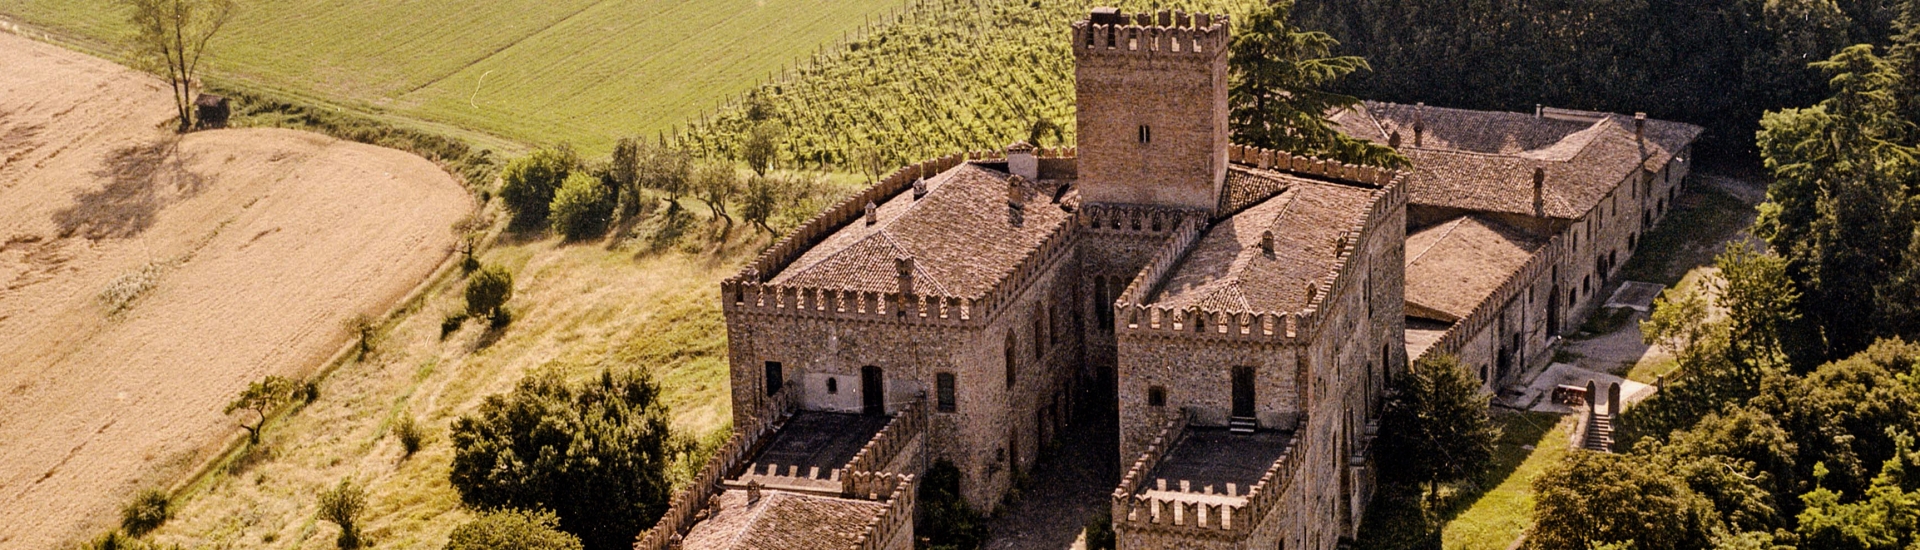 Castello di Tabiano - Vista aerea del Castello di Tabiano foto di: |Castello di Tabiano| - Castello di Tabiano